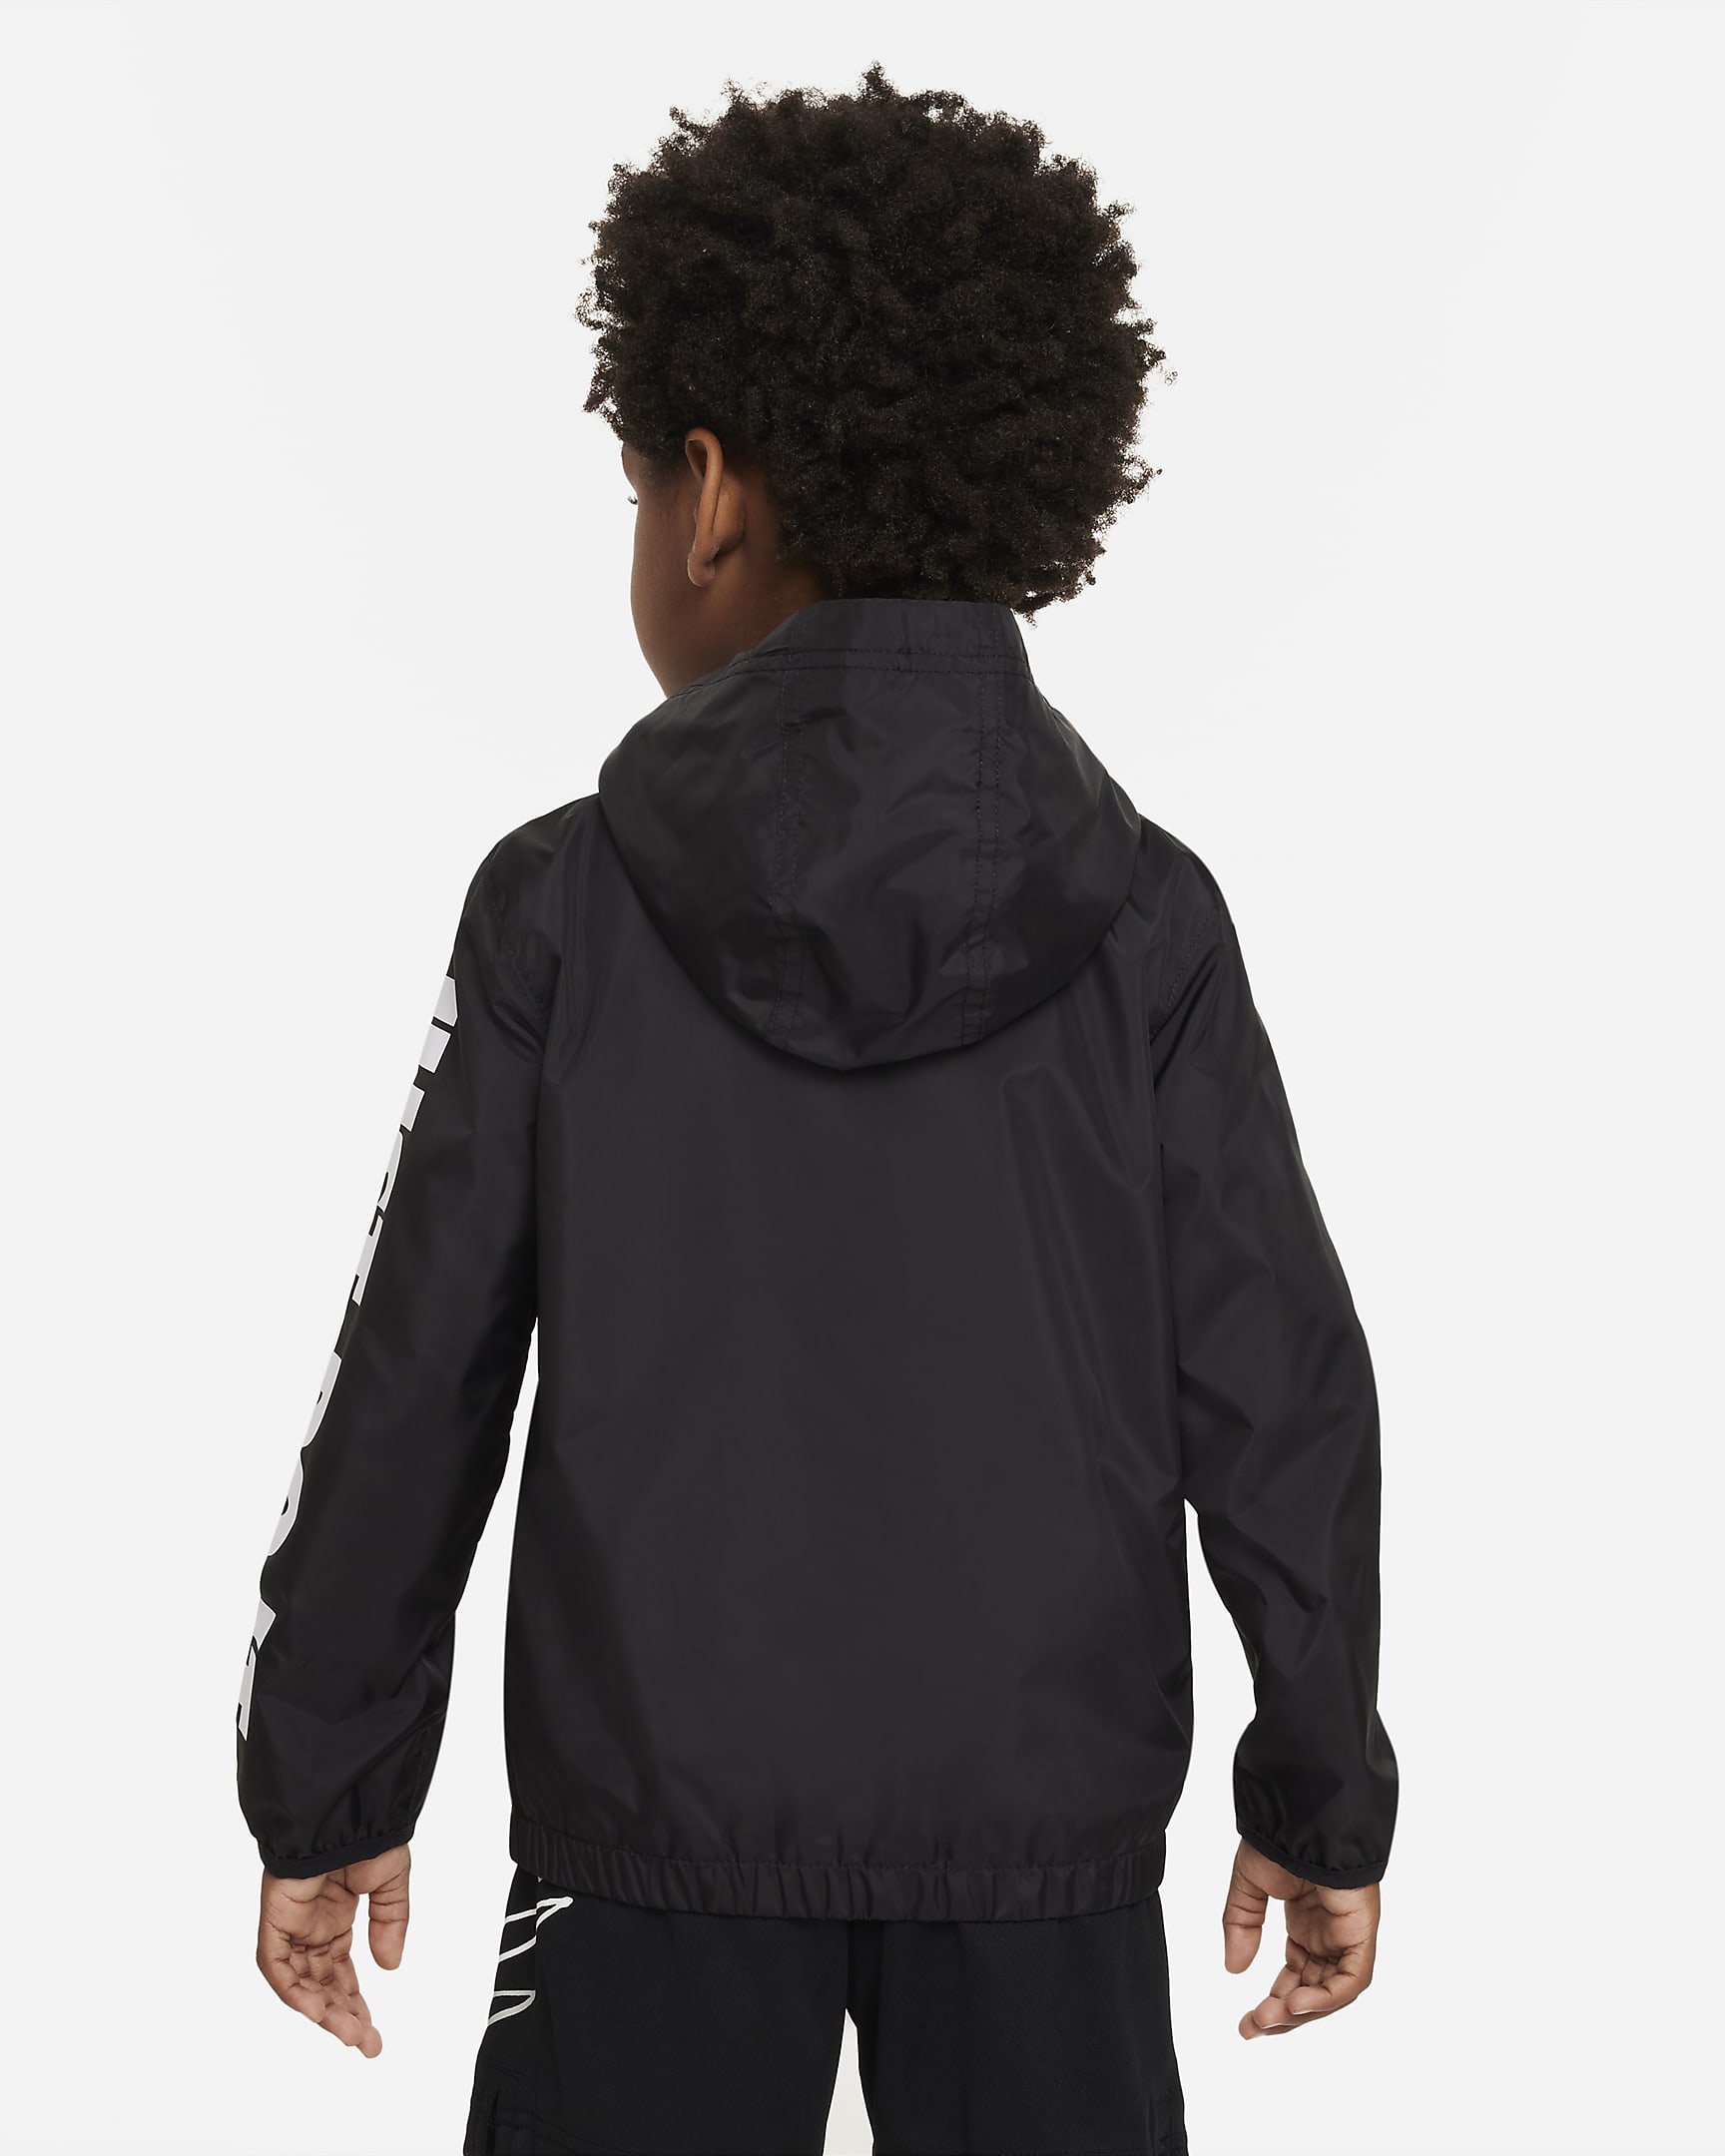 Nike Little Kids' Jacket. Nike.com